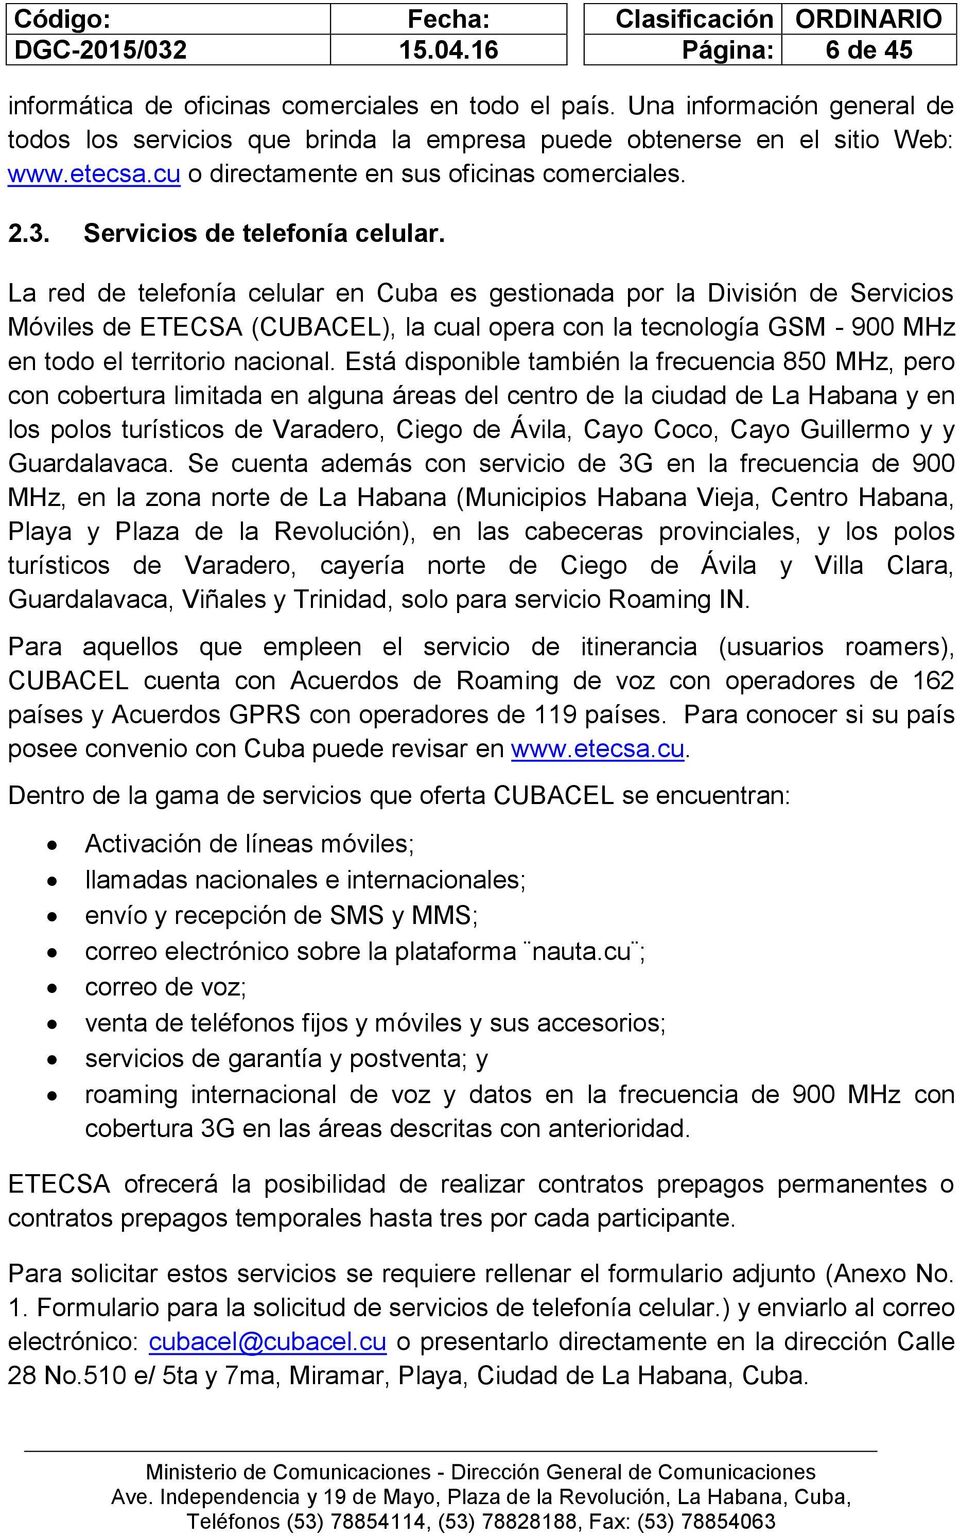 La red de telefonía celular en Cuba es gestionada por la División de Servicios Móviles de ETECSA (CUBACEL), la cual opera con la tecnología GSM - 900 MHz en todo el territorio nacional.